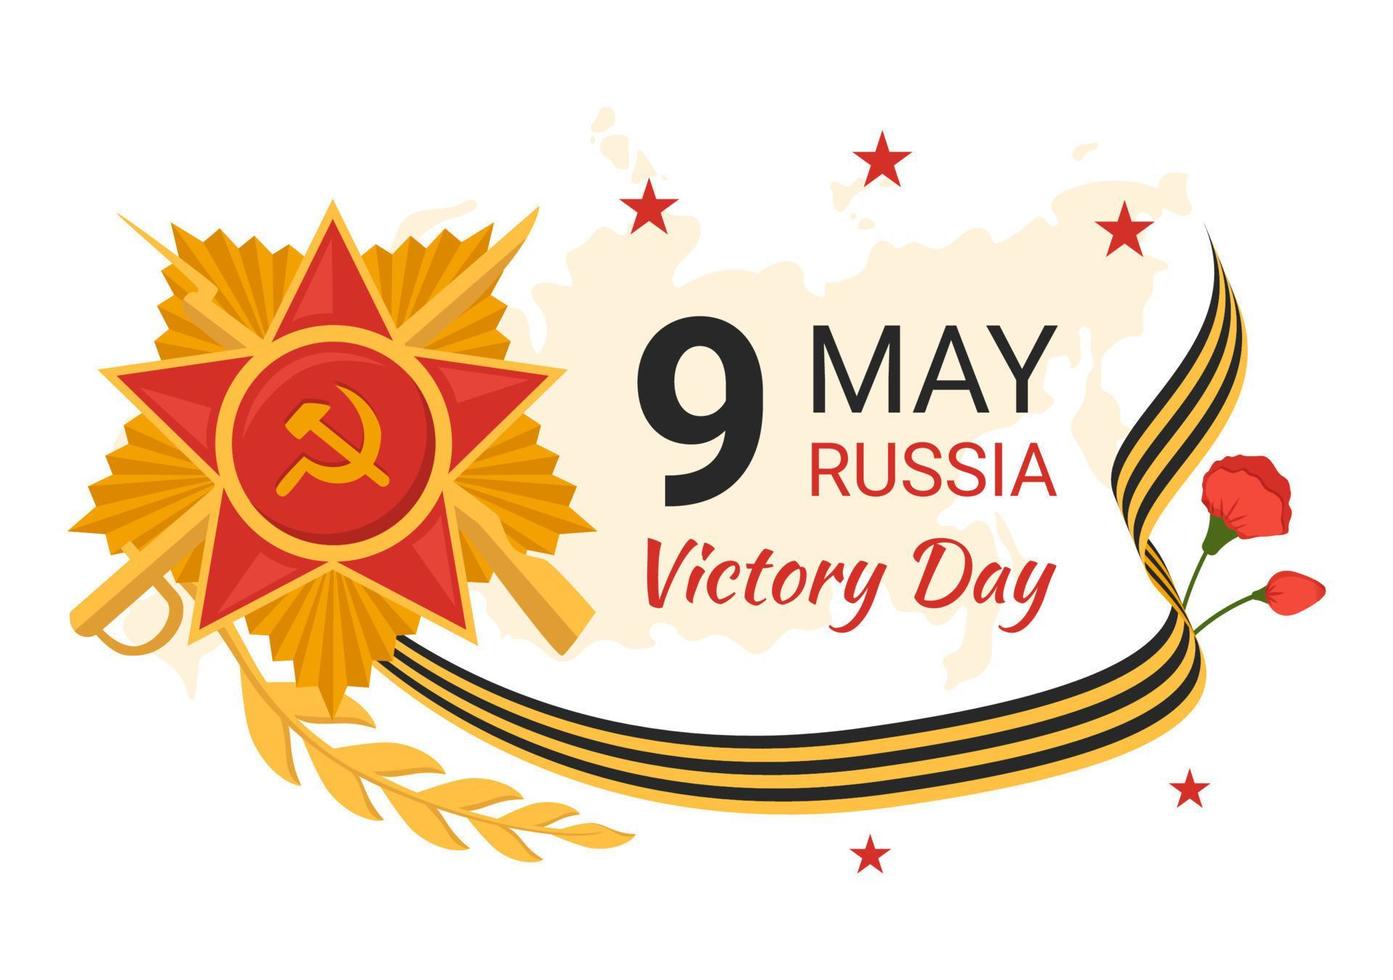 ruso victoria día en mayo 9 9 ilustración con medalla estrella de el héroe y genial patriótico guerra en plano dibujos animados mano dibujado para aterrizaje página plantillas vector